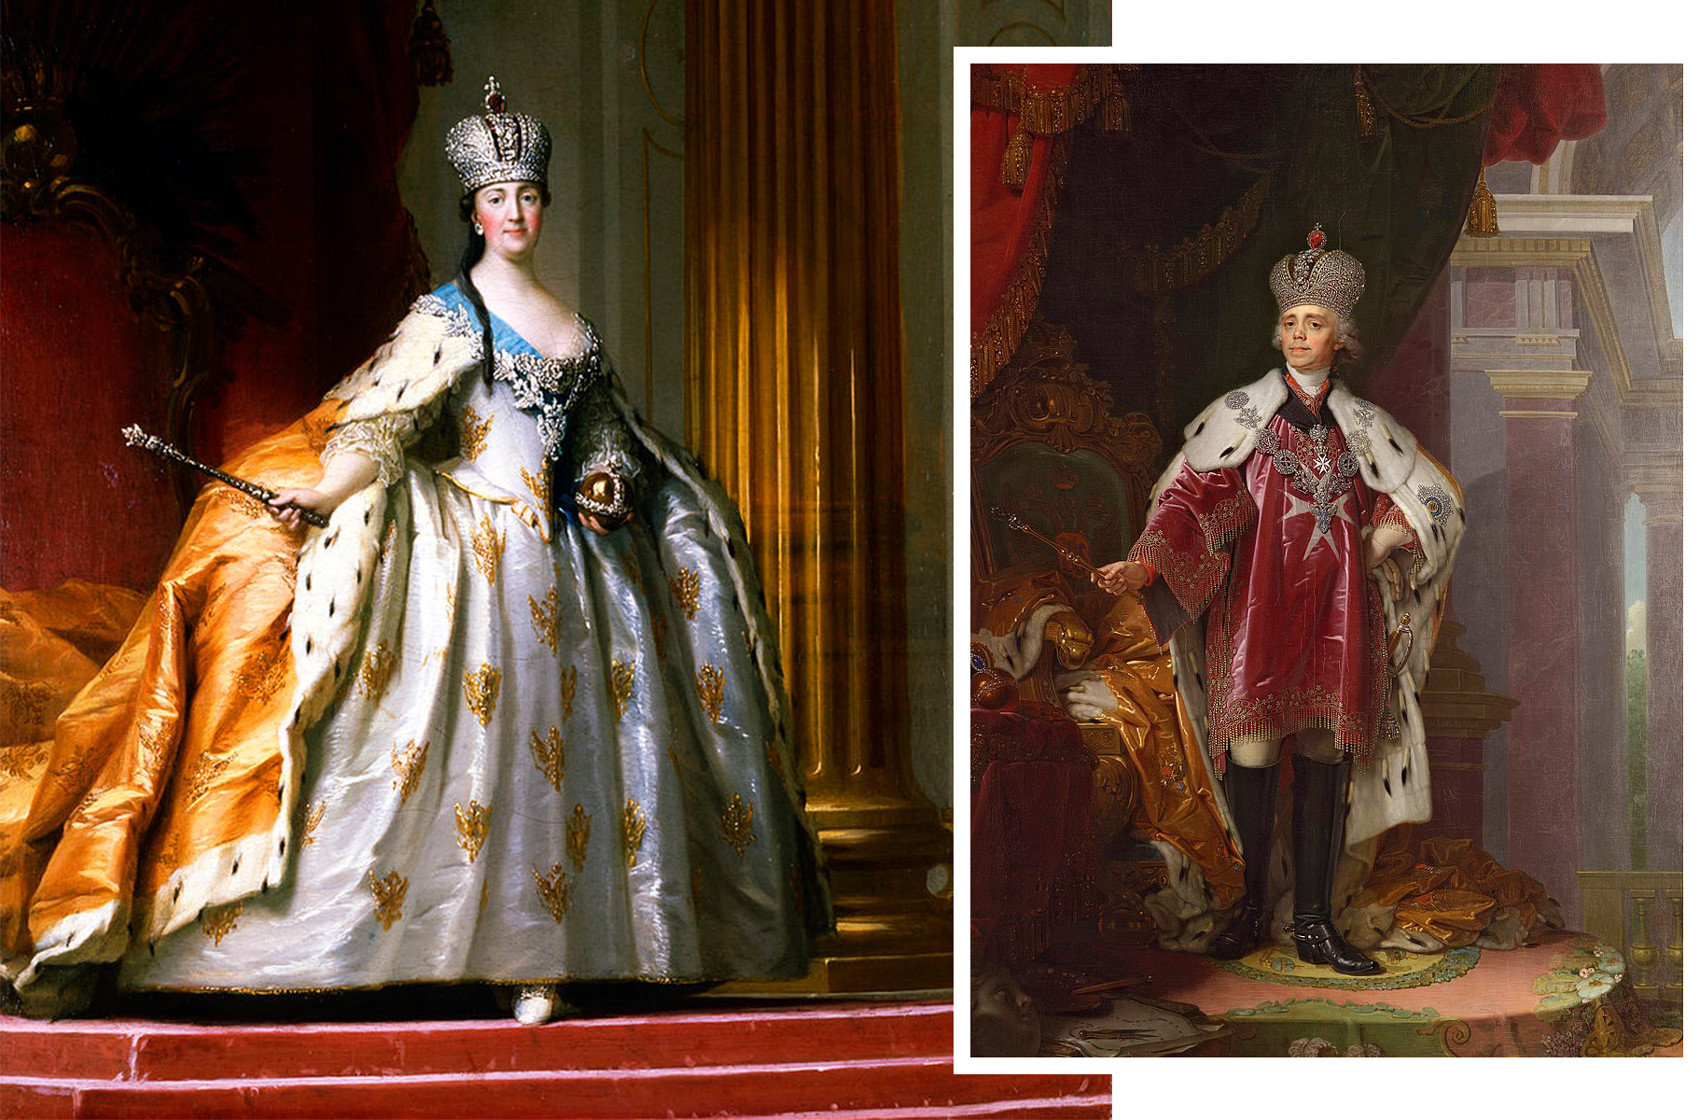 ロマノフ家の最も価値ある遺産 皇帝の王冠をめぐる5つの事実 ロシア ビヨンド